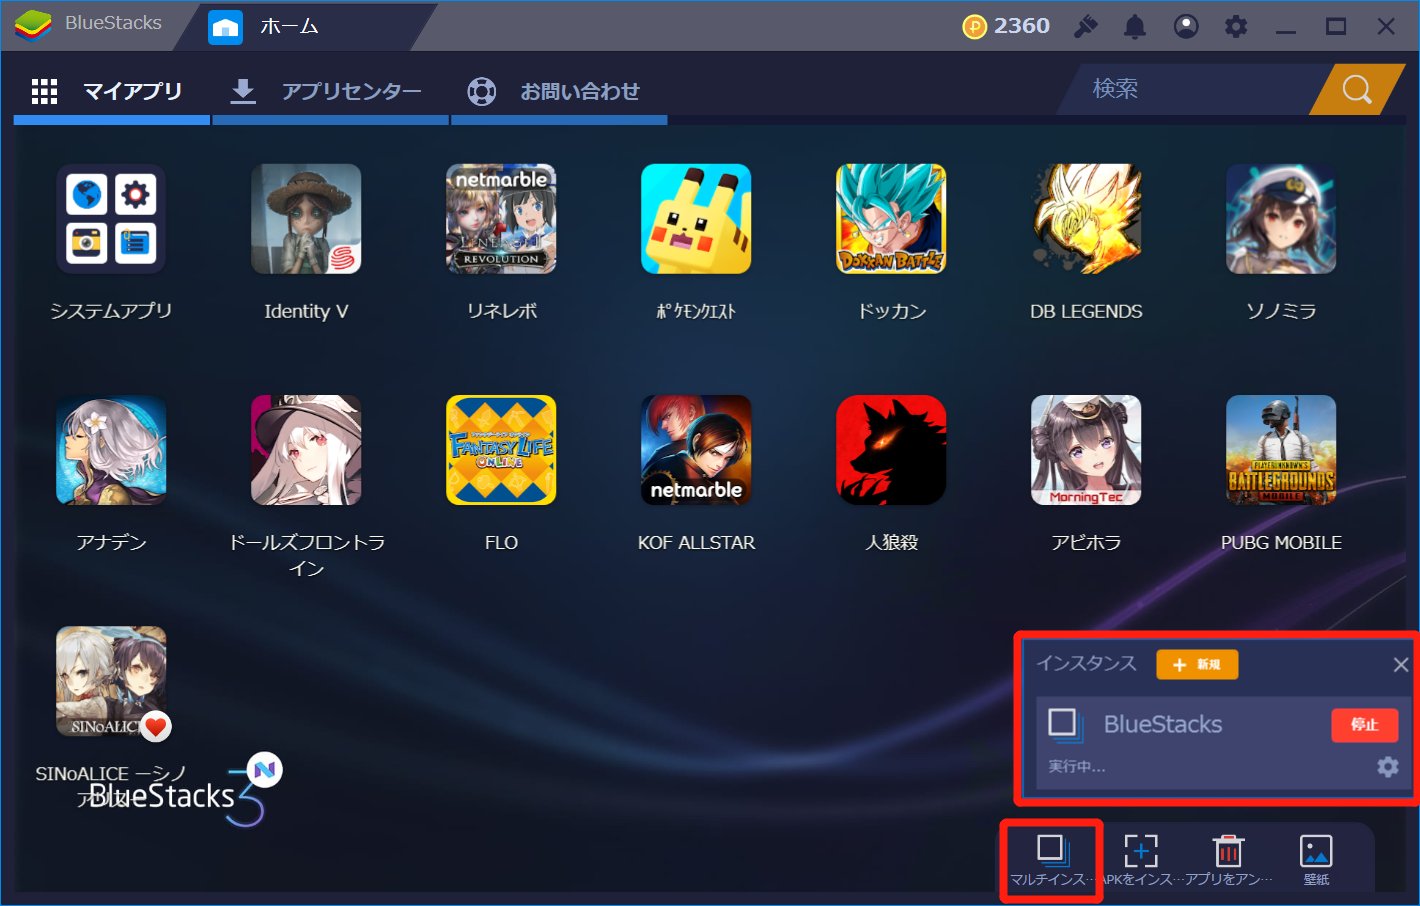 Bluestacks日本公式アカウント Twitter પર Bluestacksのマルチインスタンス機能をご存知ですか マイアプリの右下のアイコンからインスタンスを立ち上げて 複数のゲームを同時にプレイすることが可能です こうやって効率的にゲームを進めることができるのもブルスタ